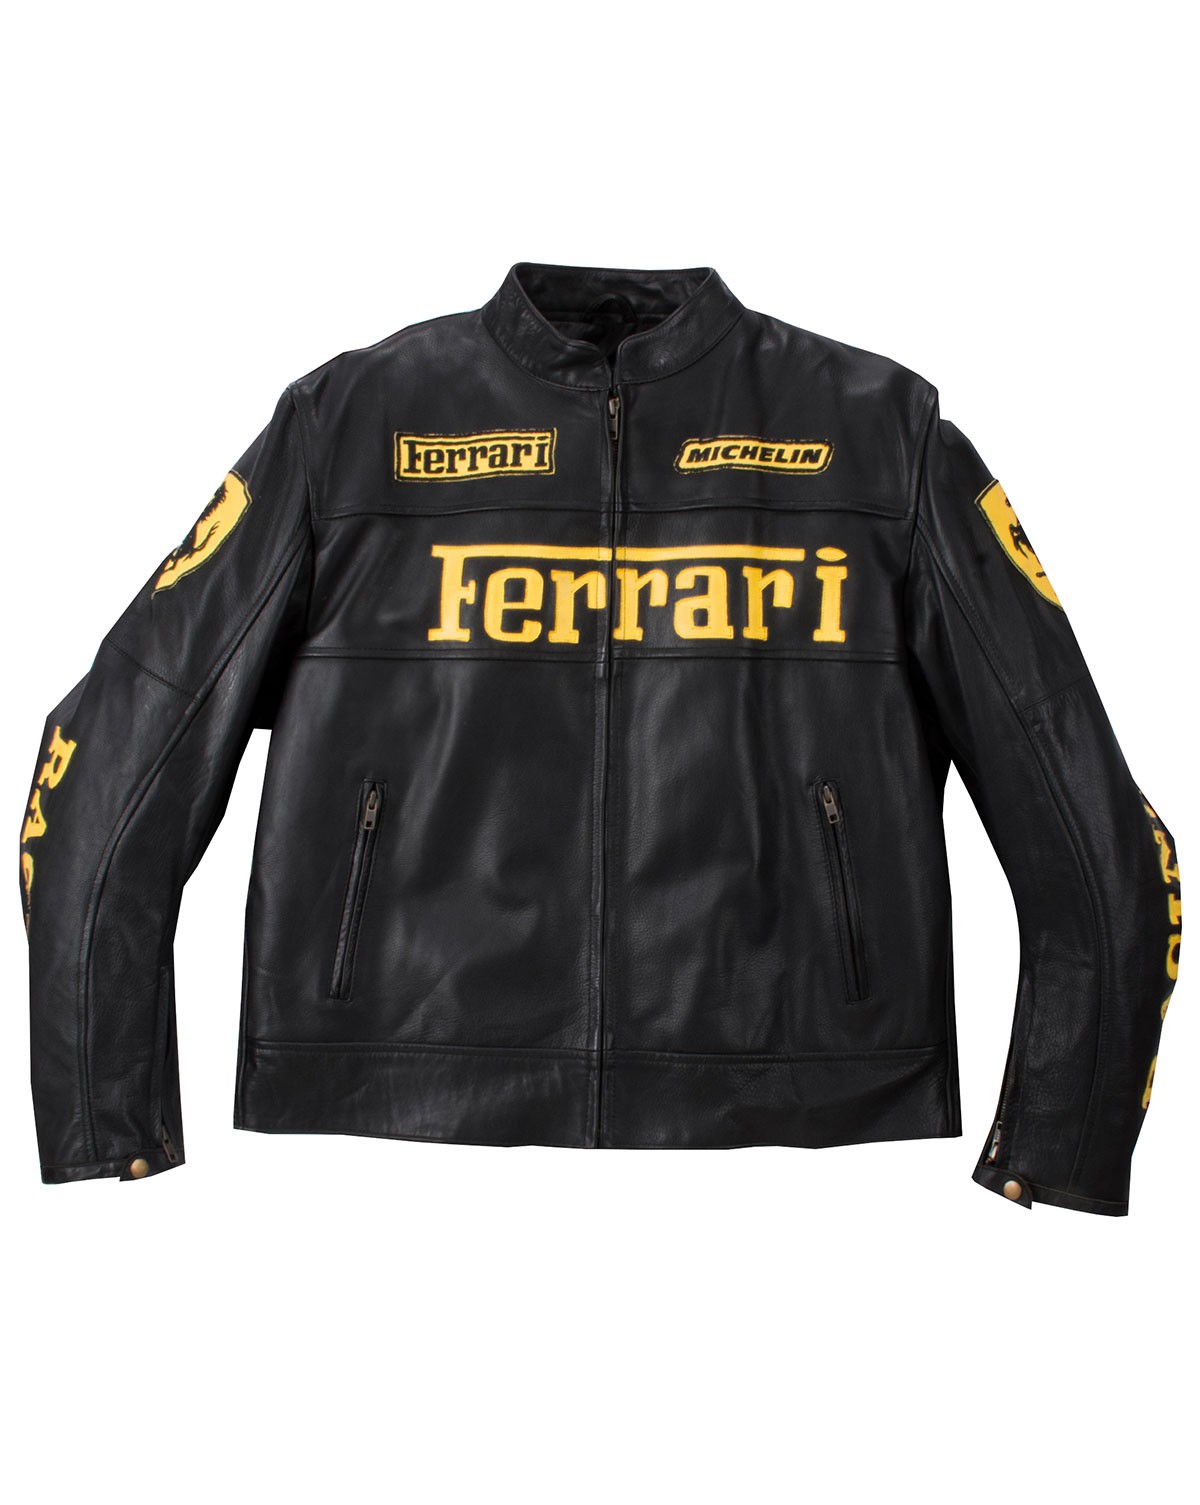 Ferrari Black Leather Biker Jacket - Maker of Jacket